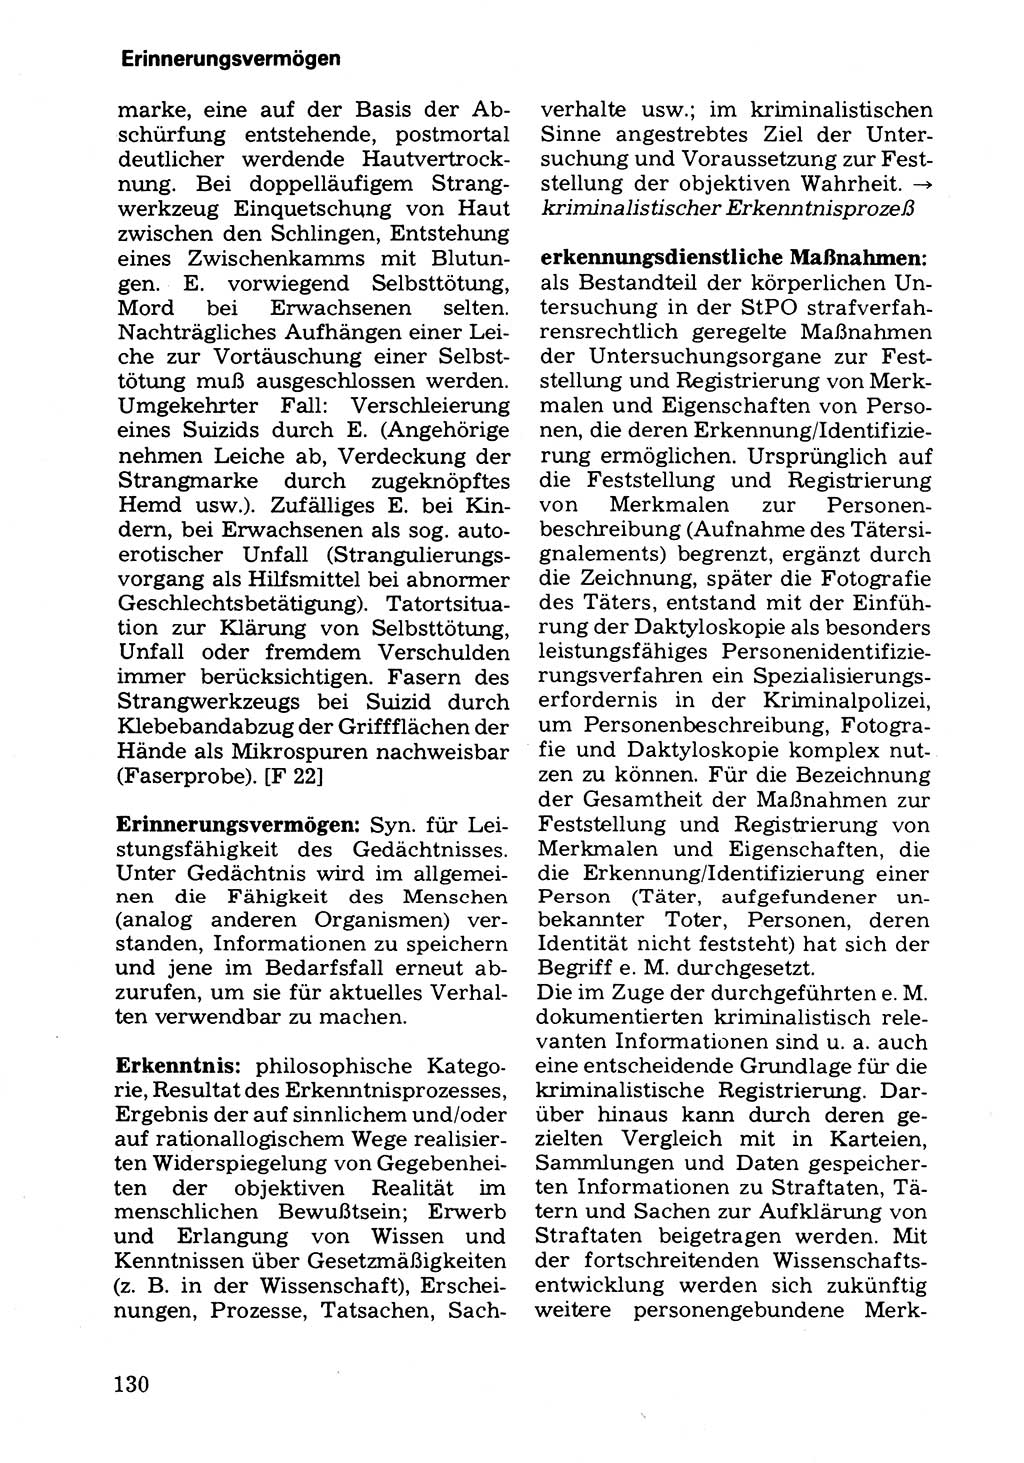 Wörterbuch der sozialistischen Kriminalistik [Deutsche Demokratische Republik (DDR)] 1981, Seite 130 (Wb. soz. Krim. DDR 1981, S. 130)